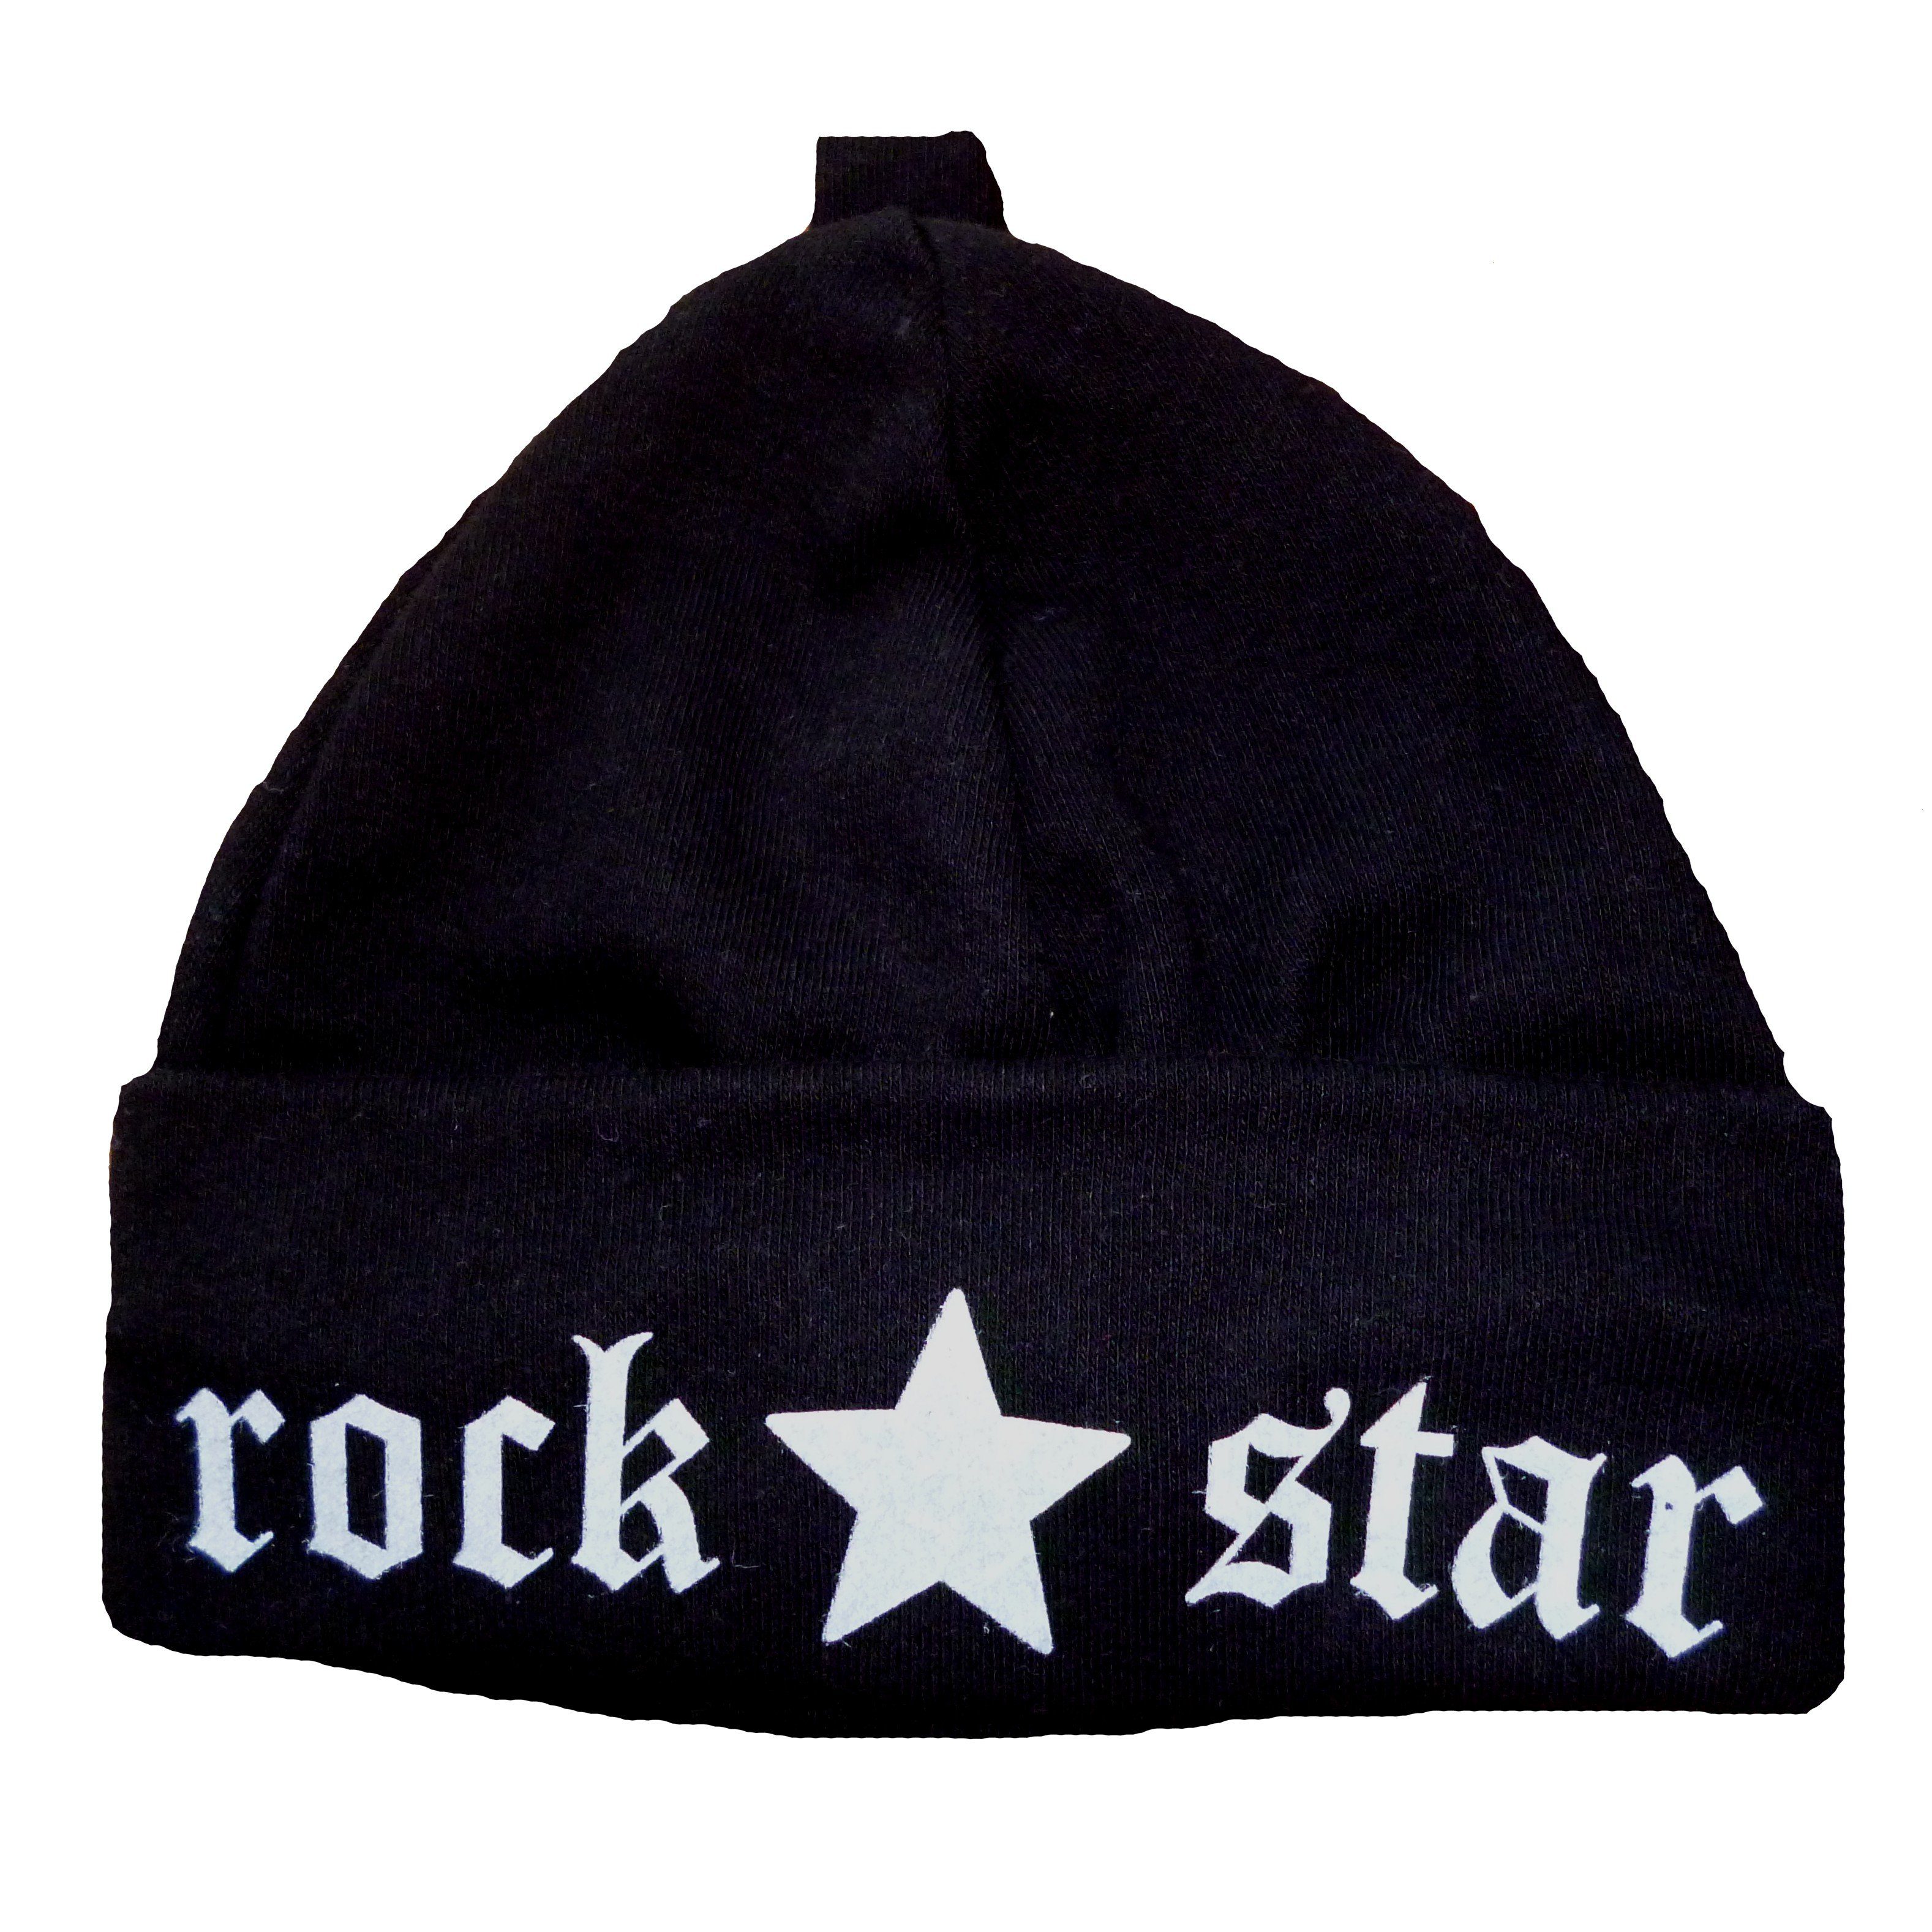 Babymajawelt Erstlingsmütze Baby Mütze ROCK STAR schwarz-weiss, Neugeborene Mütze 0-2 Mon. (1 Stück, Mütze) Erstausstattung, Geschenk zur Geburt, Fotoshooting